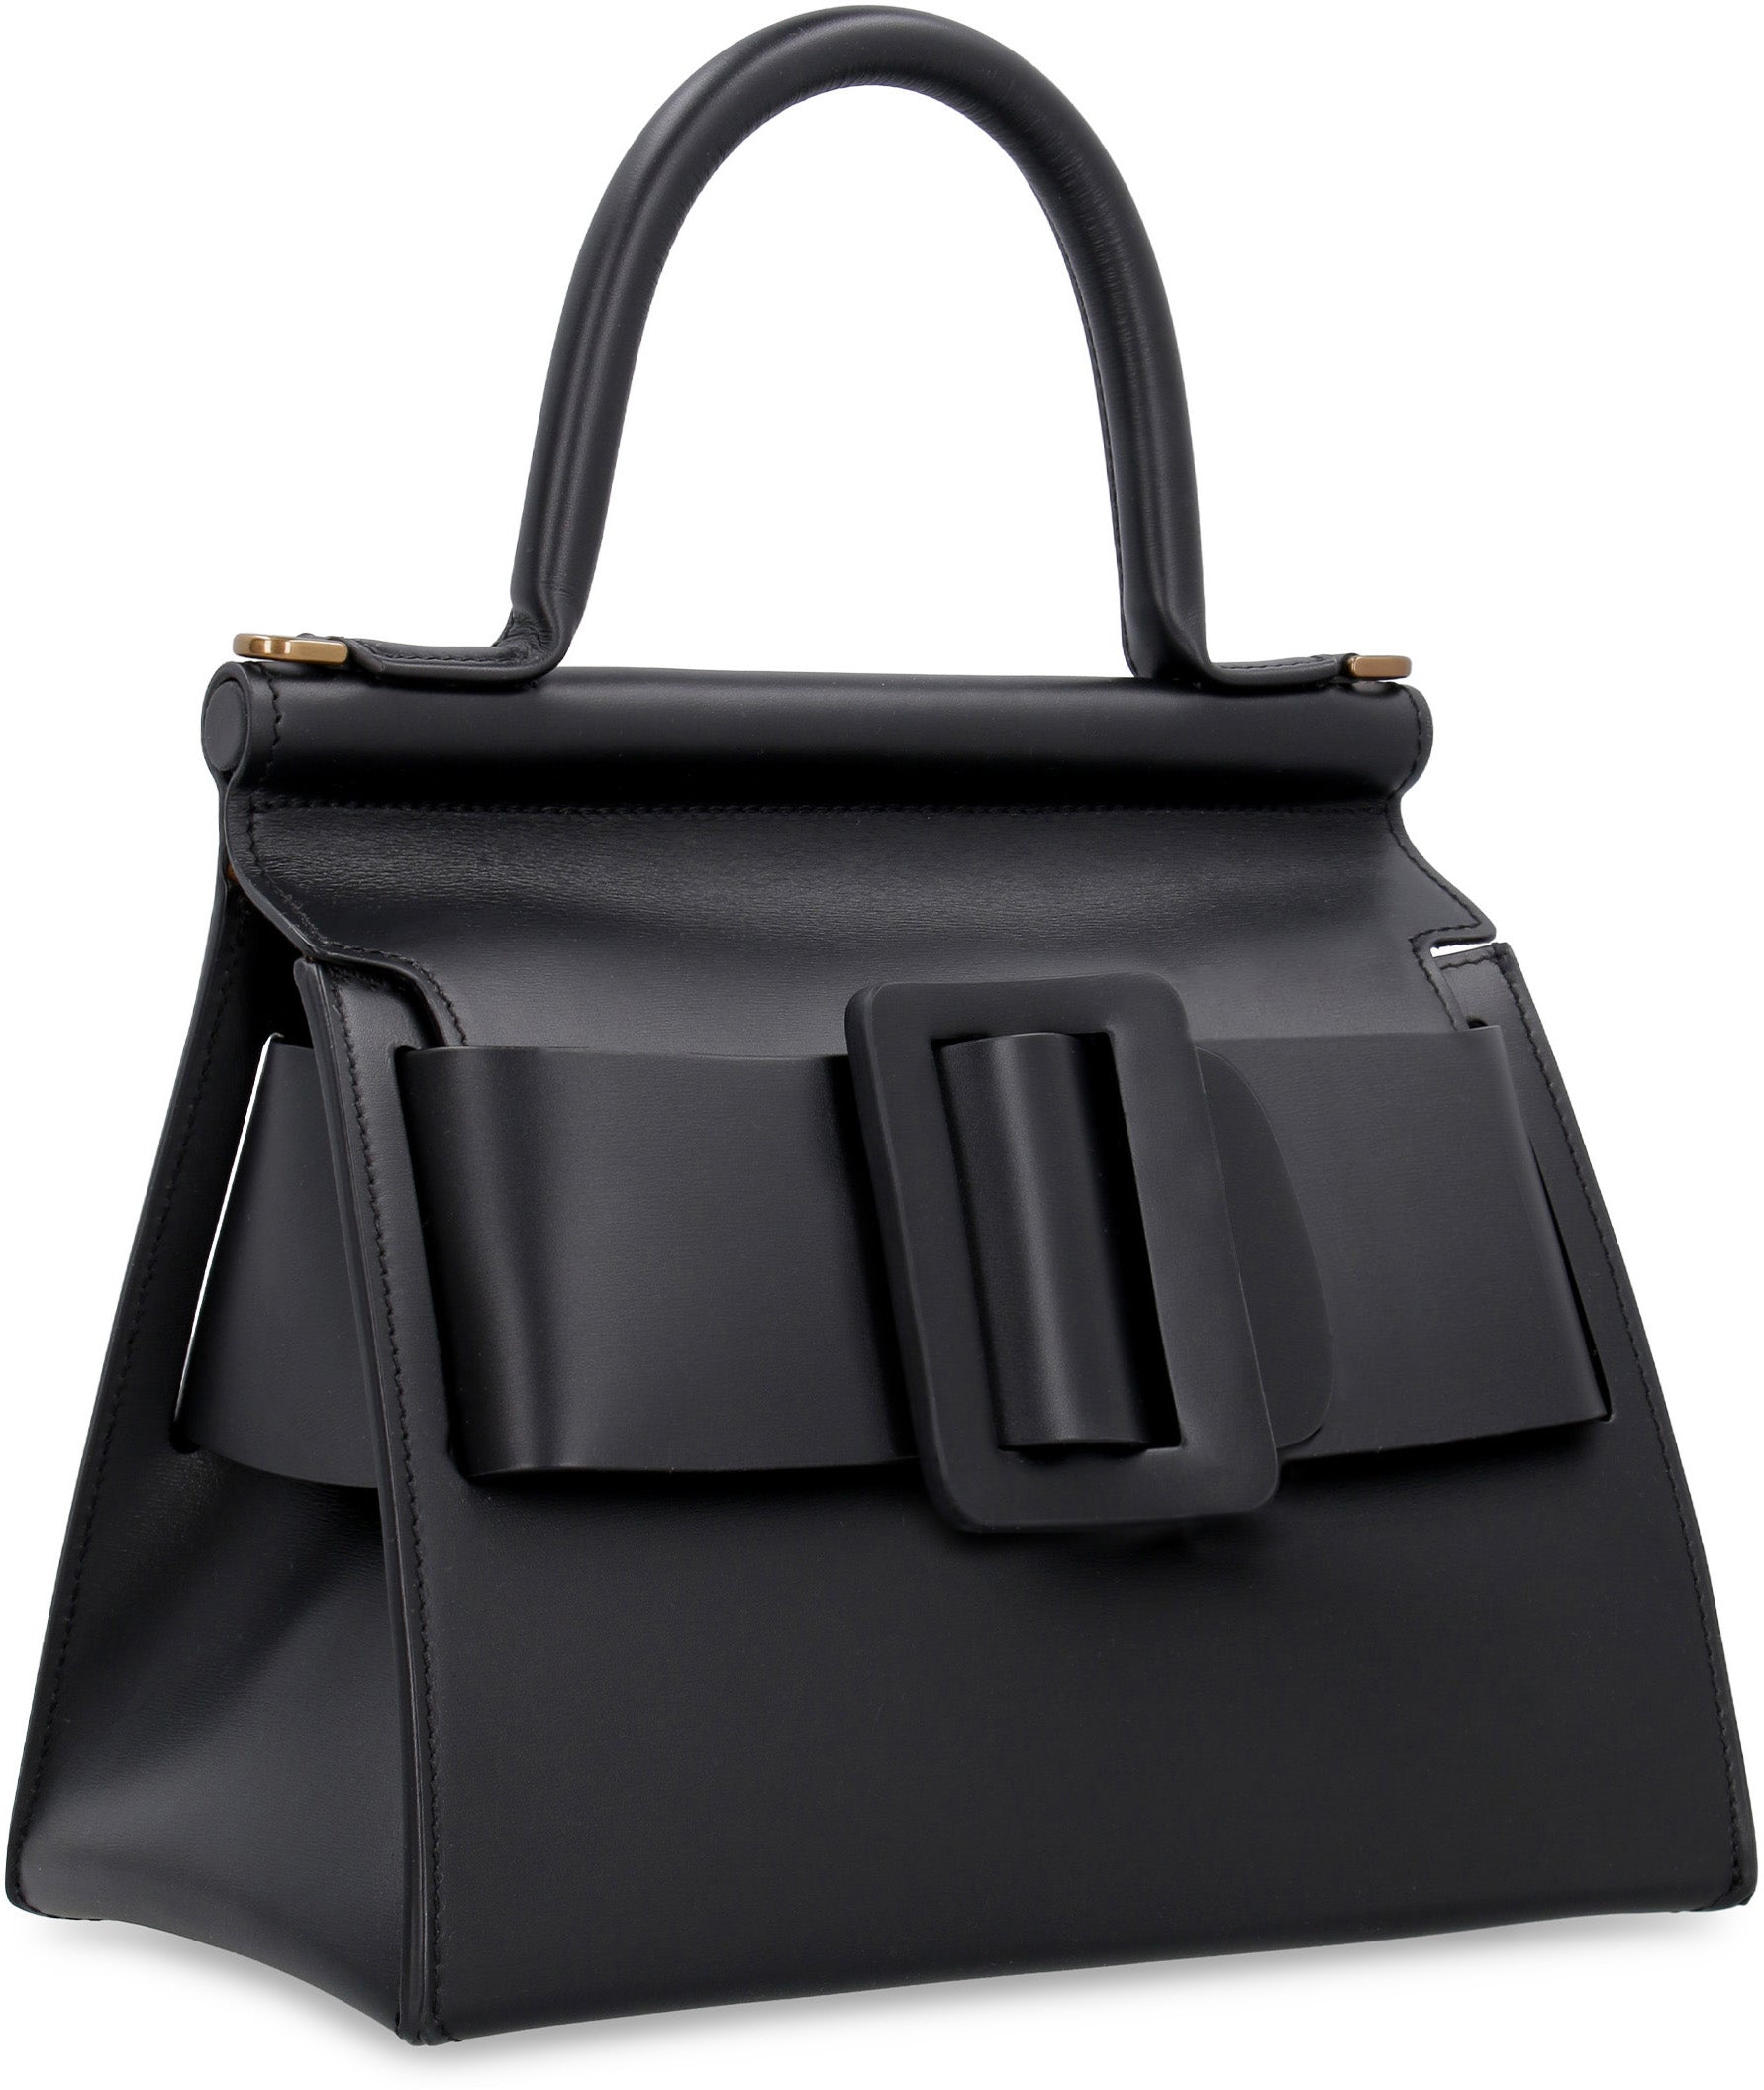 Karl 24 leather handbag